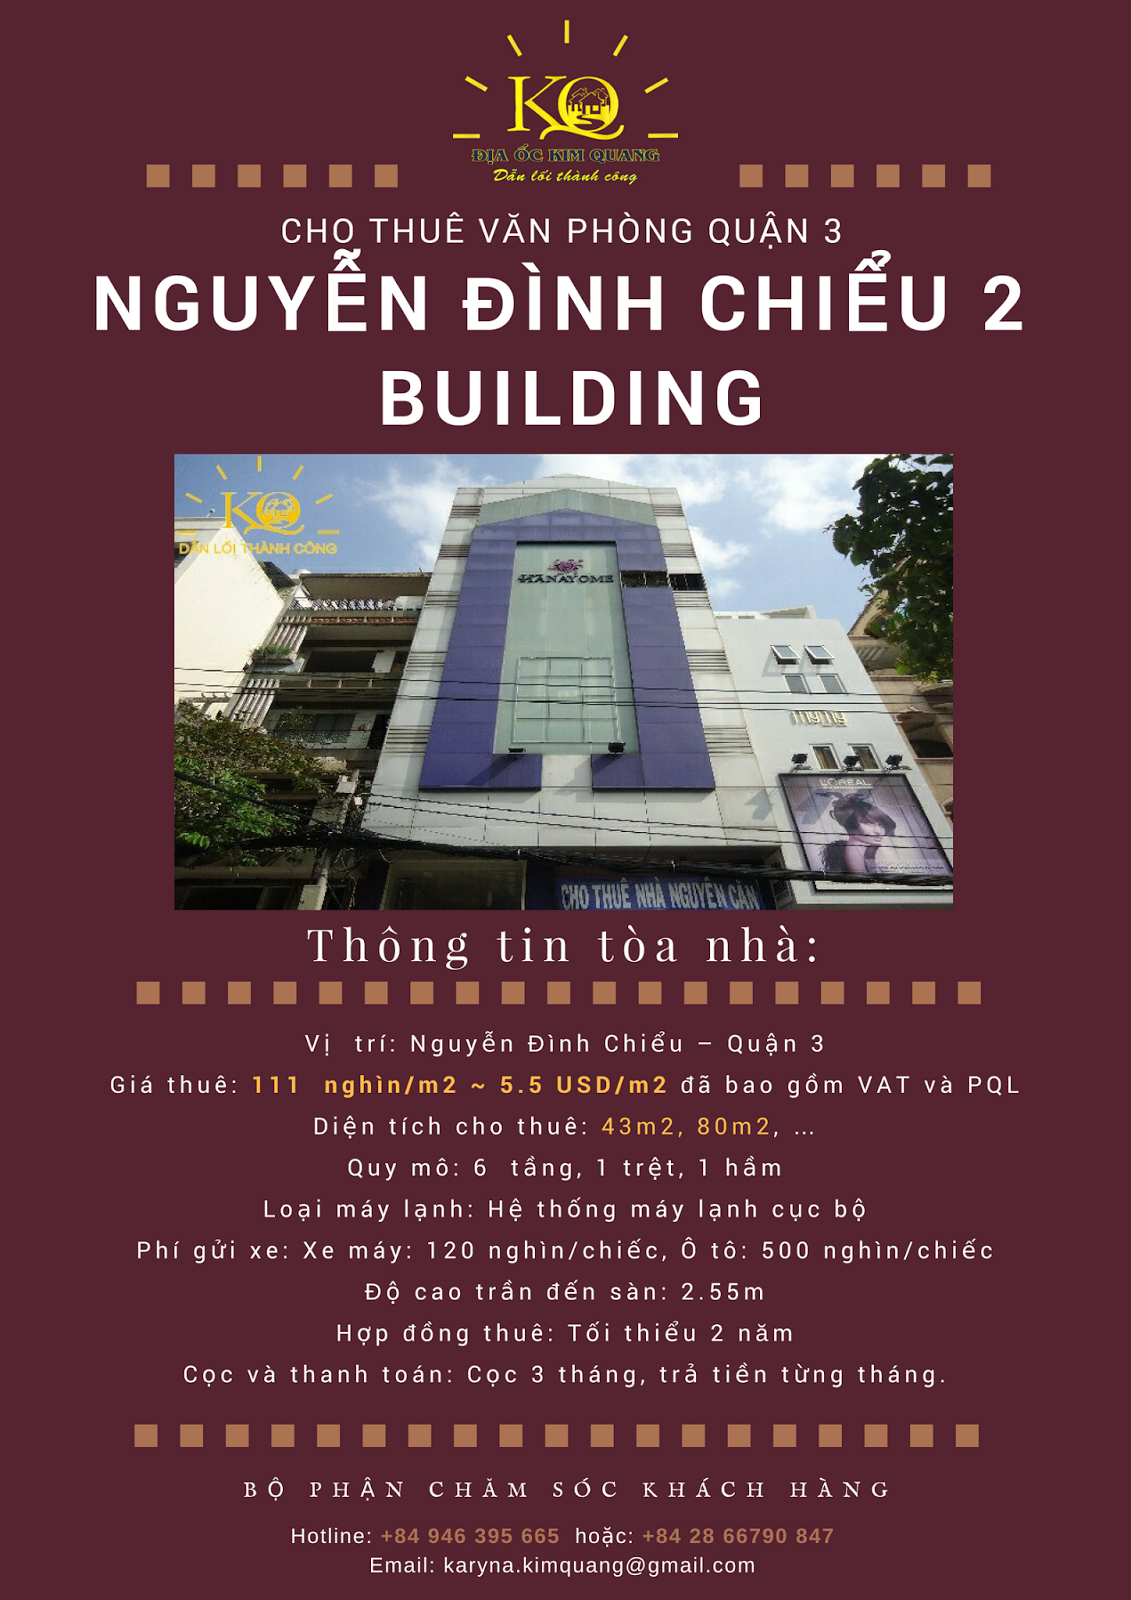 Cho thuê văn phòng quận 3 Nguyễn Đình Chiểu 2 building